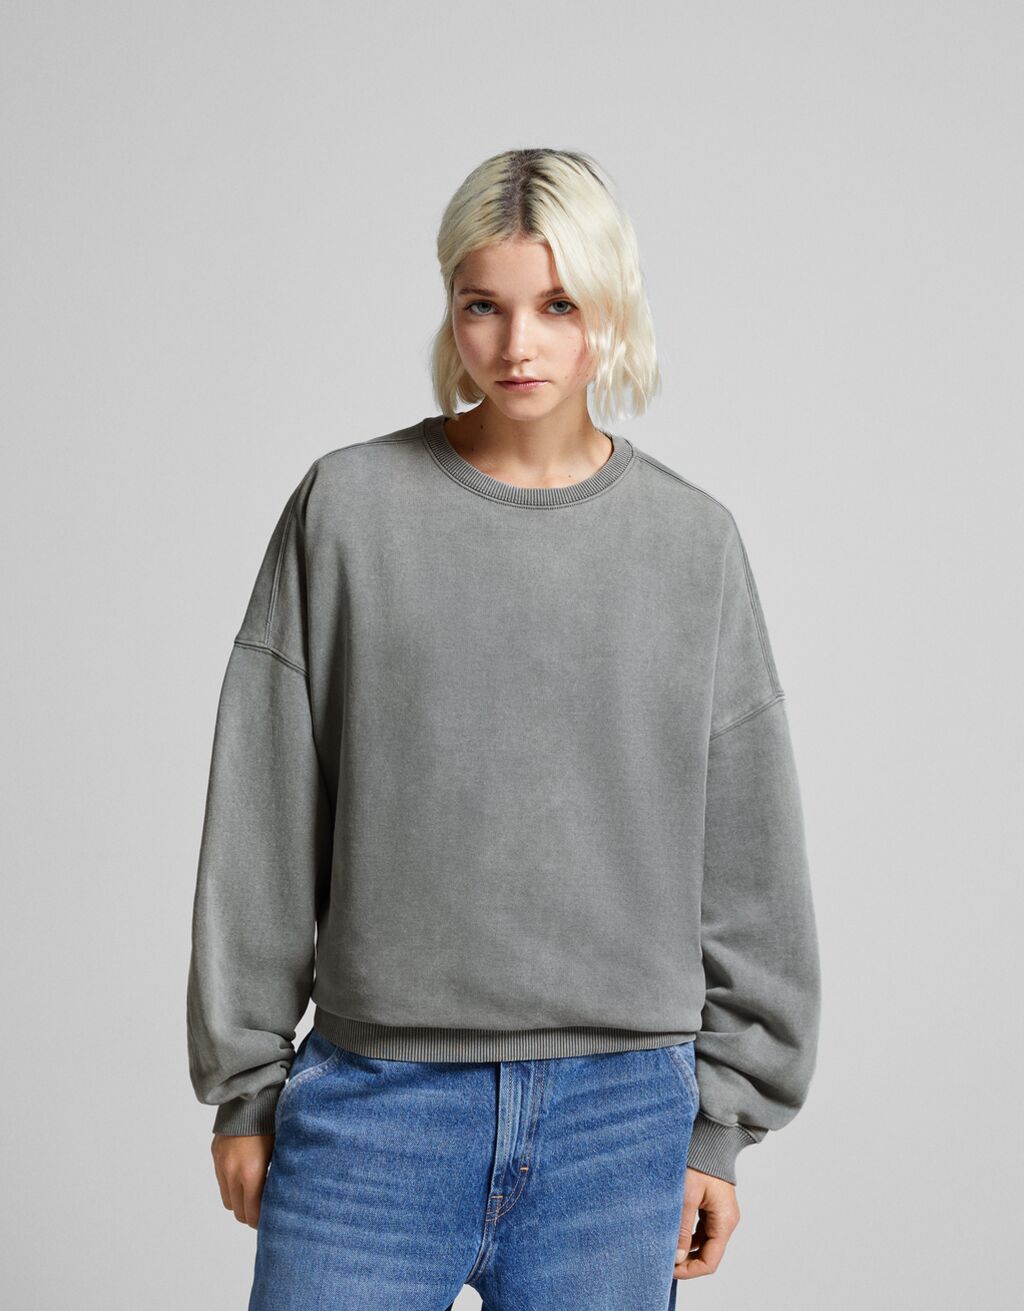 Oversized sweatshirt - Sweatshirts and hoodies - Women | Bershka